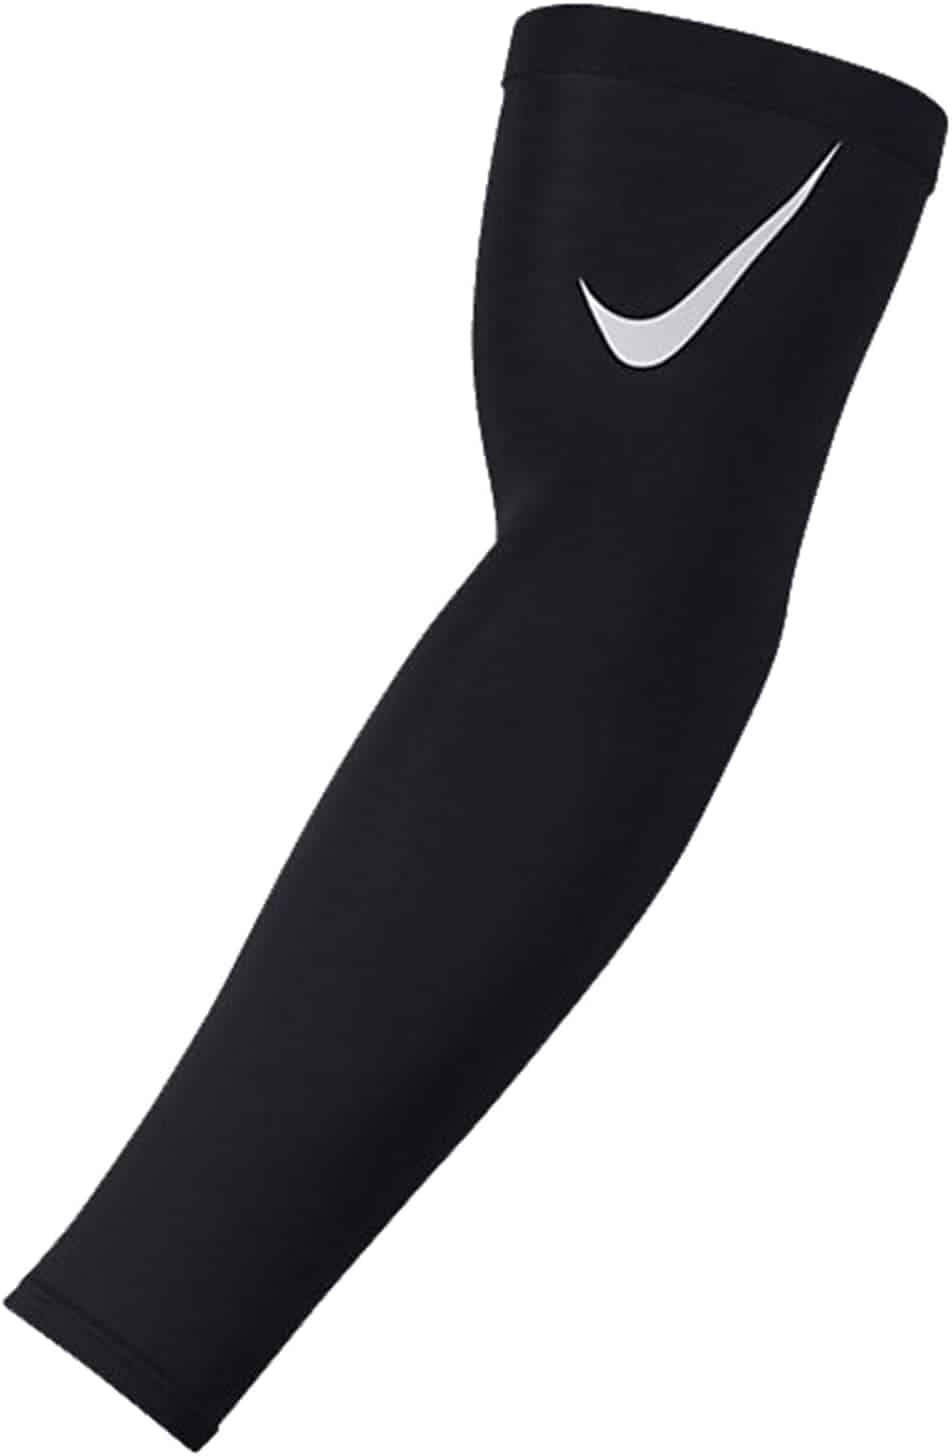 ปลอกแขนที่ดีที่สุดโดยไม่ต้อง Padding- Nike Pro Adult Dri-FIT 3.0 ปลอกแขน